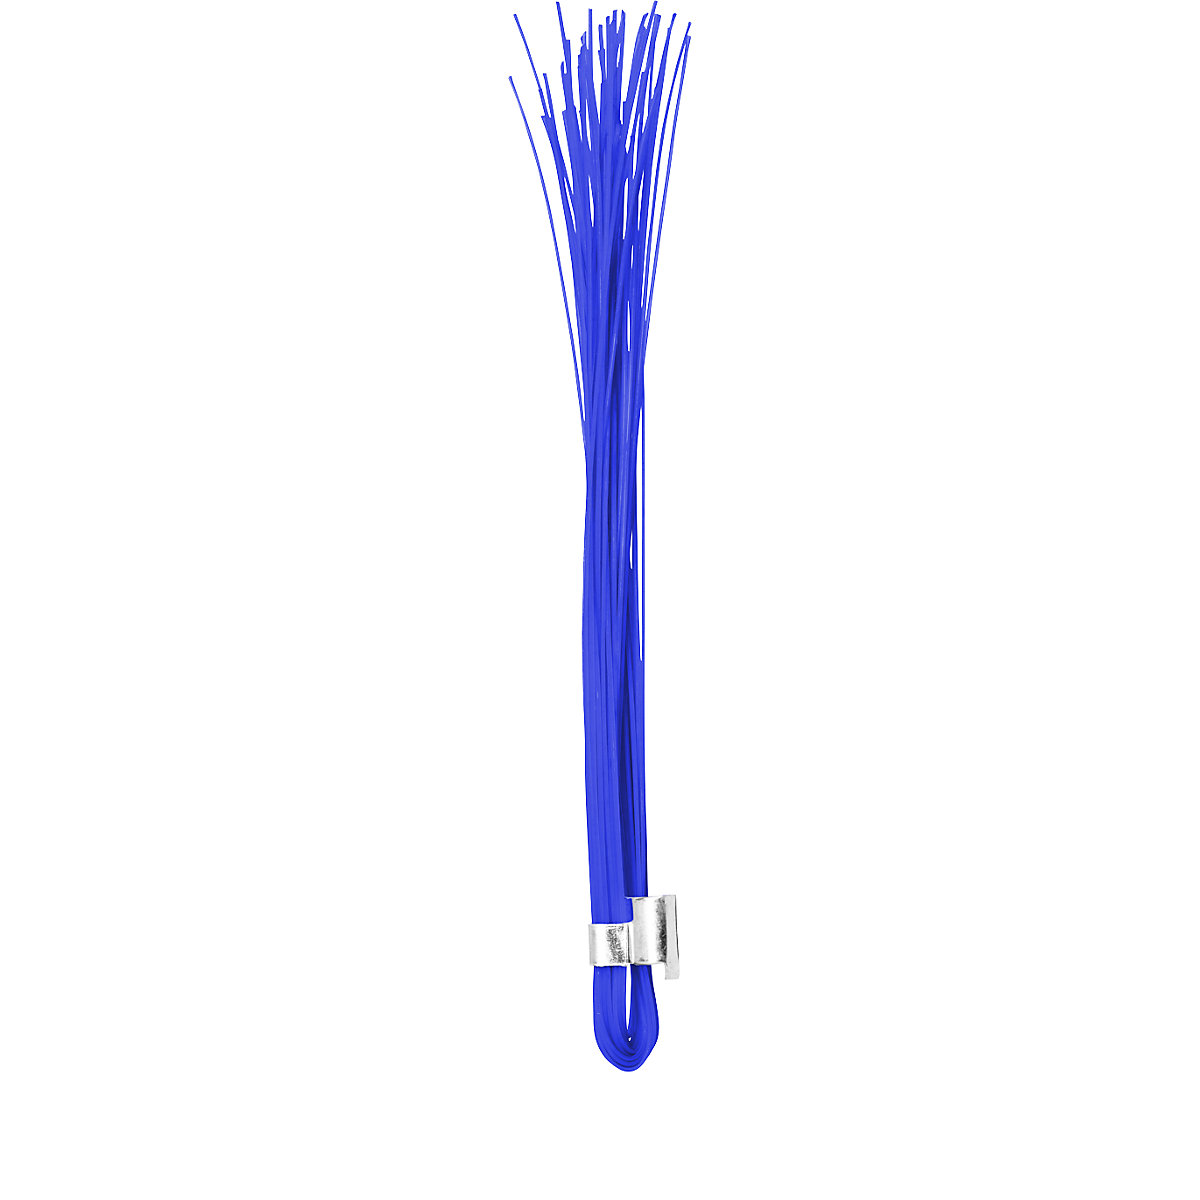 Tracciatori – Ampere, confezione da 500 pz., blu fluorescente-4